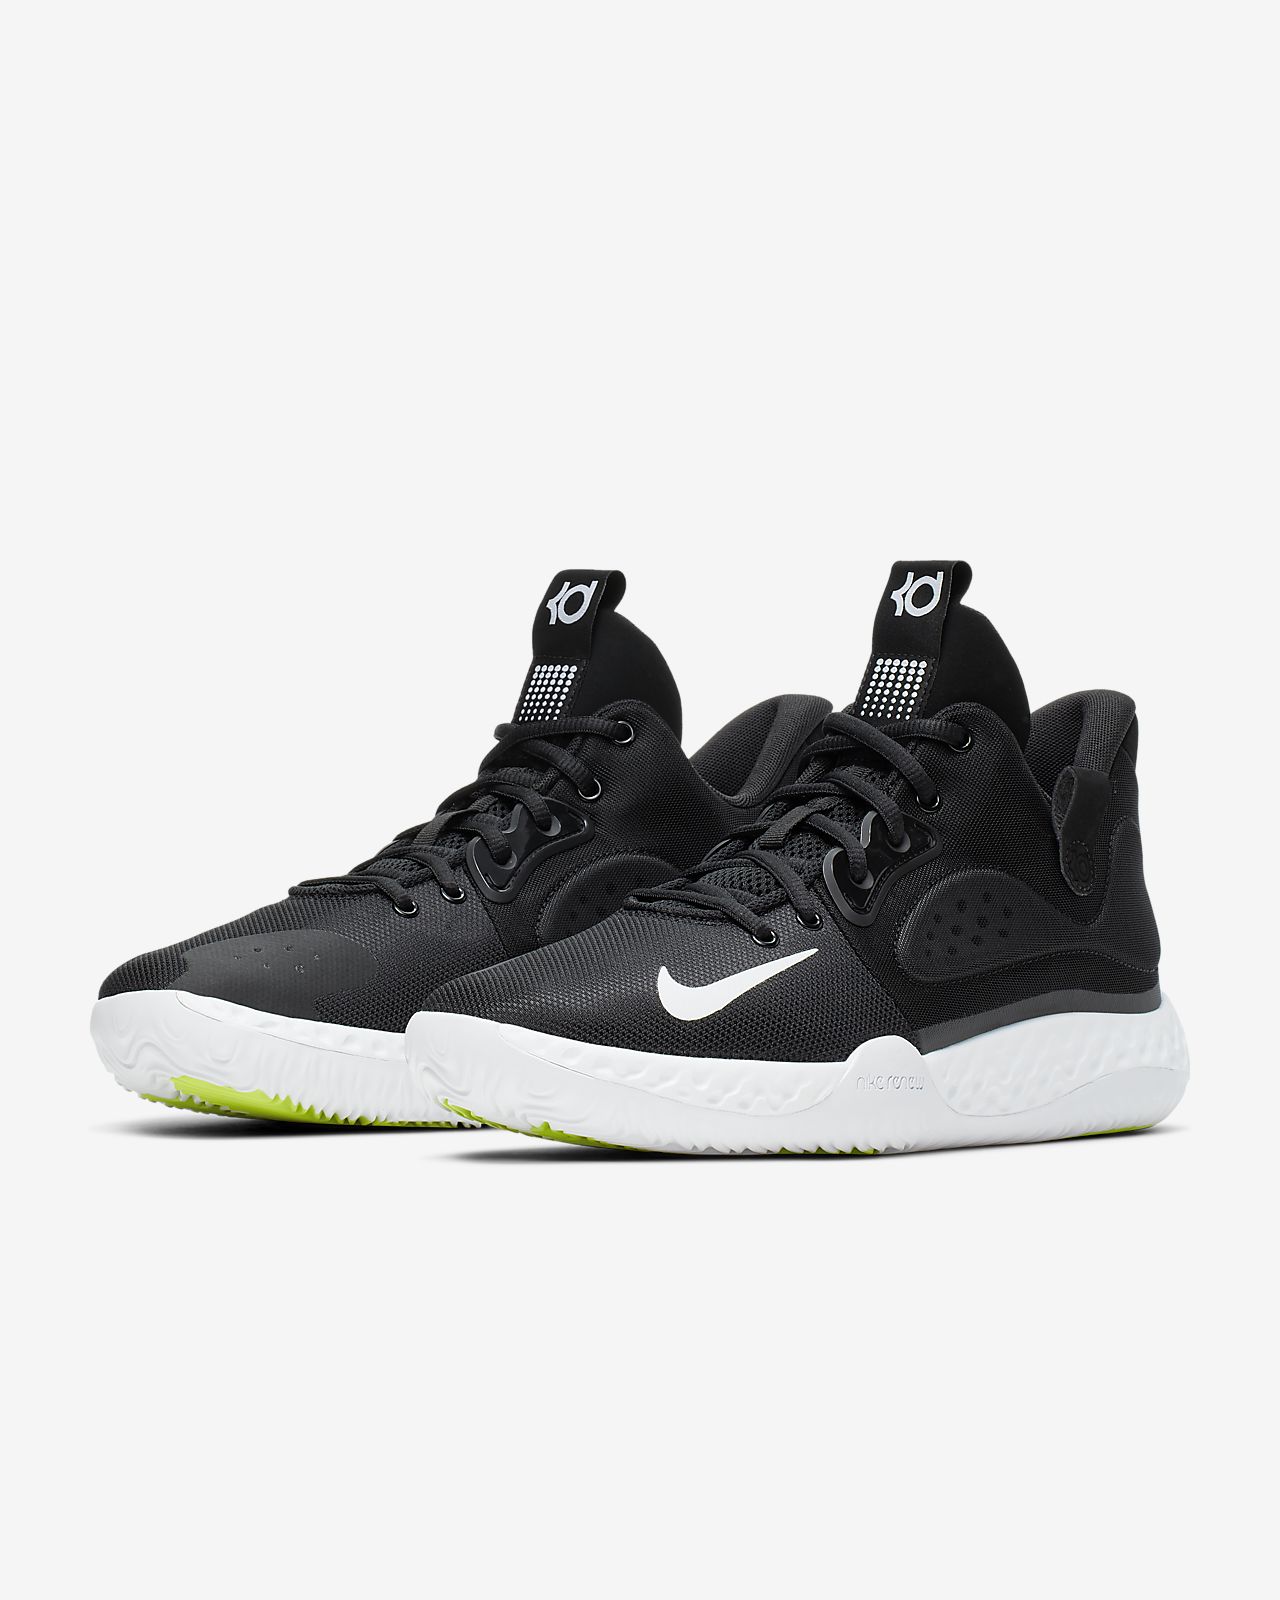 KD Trey 5 VII EP Shoe. Nike PH